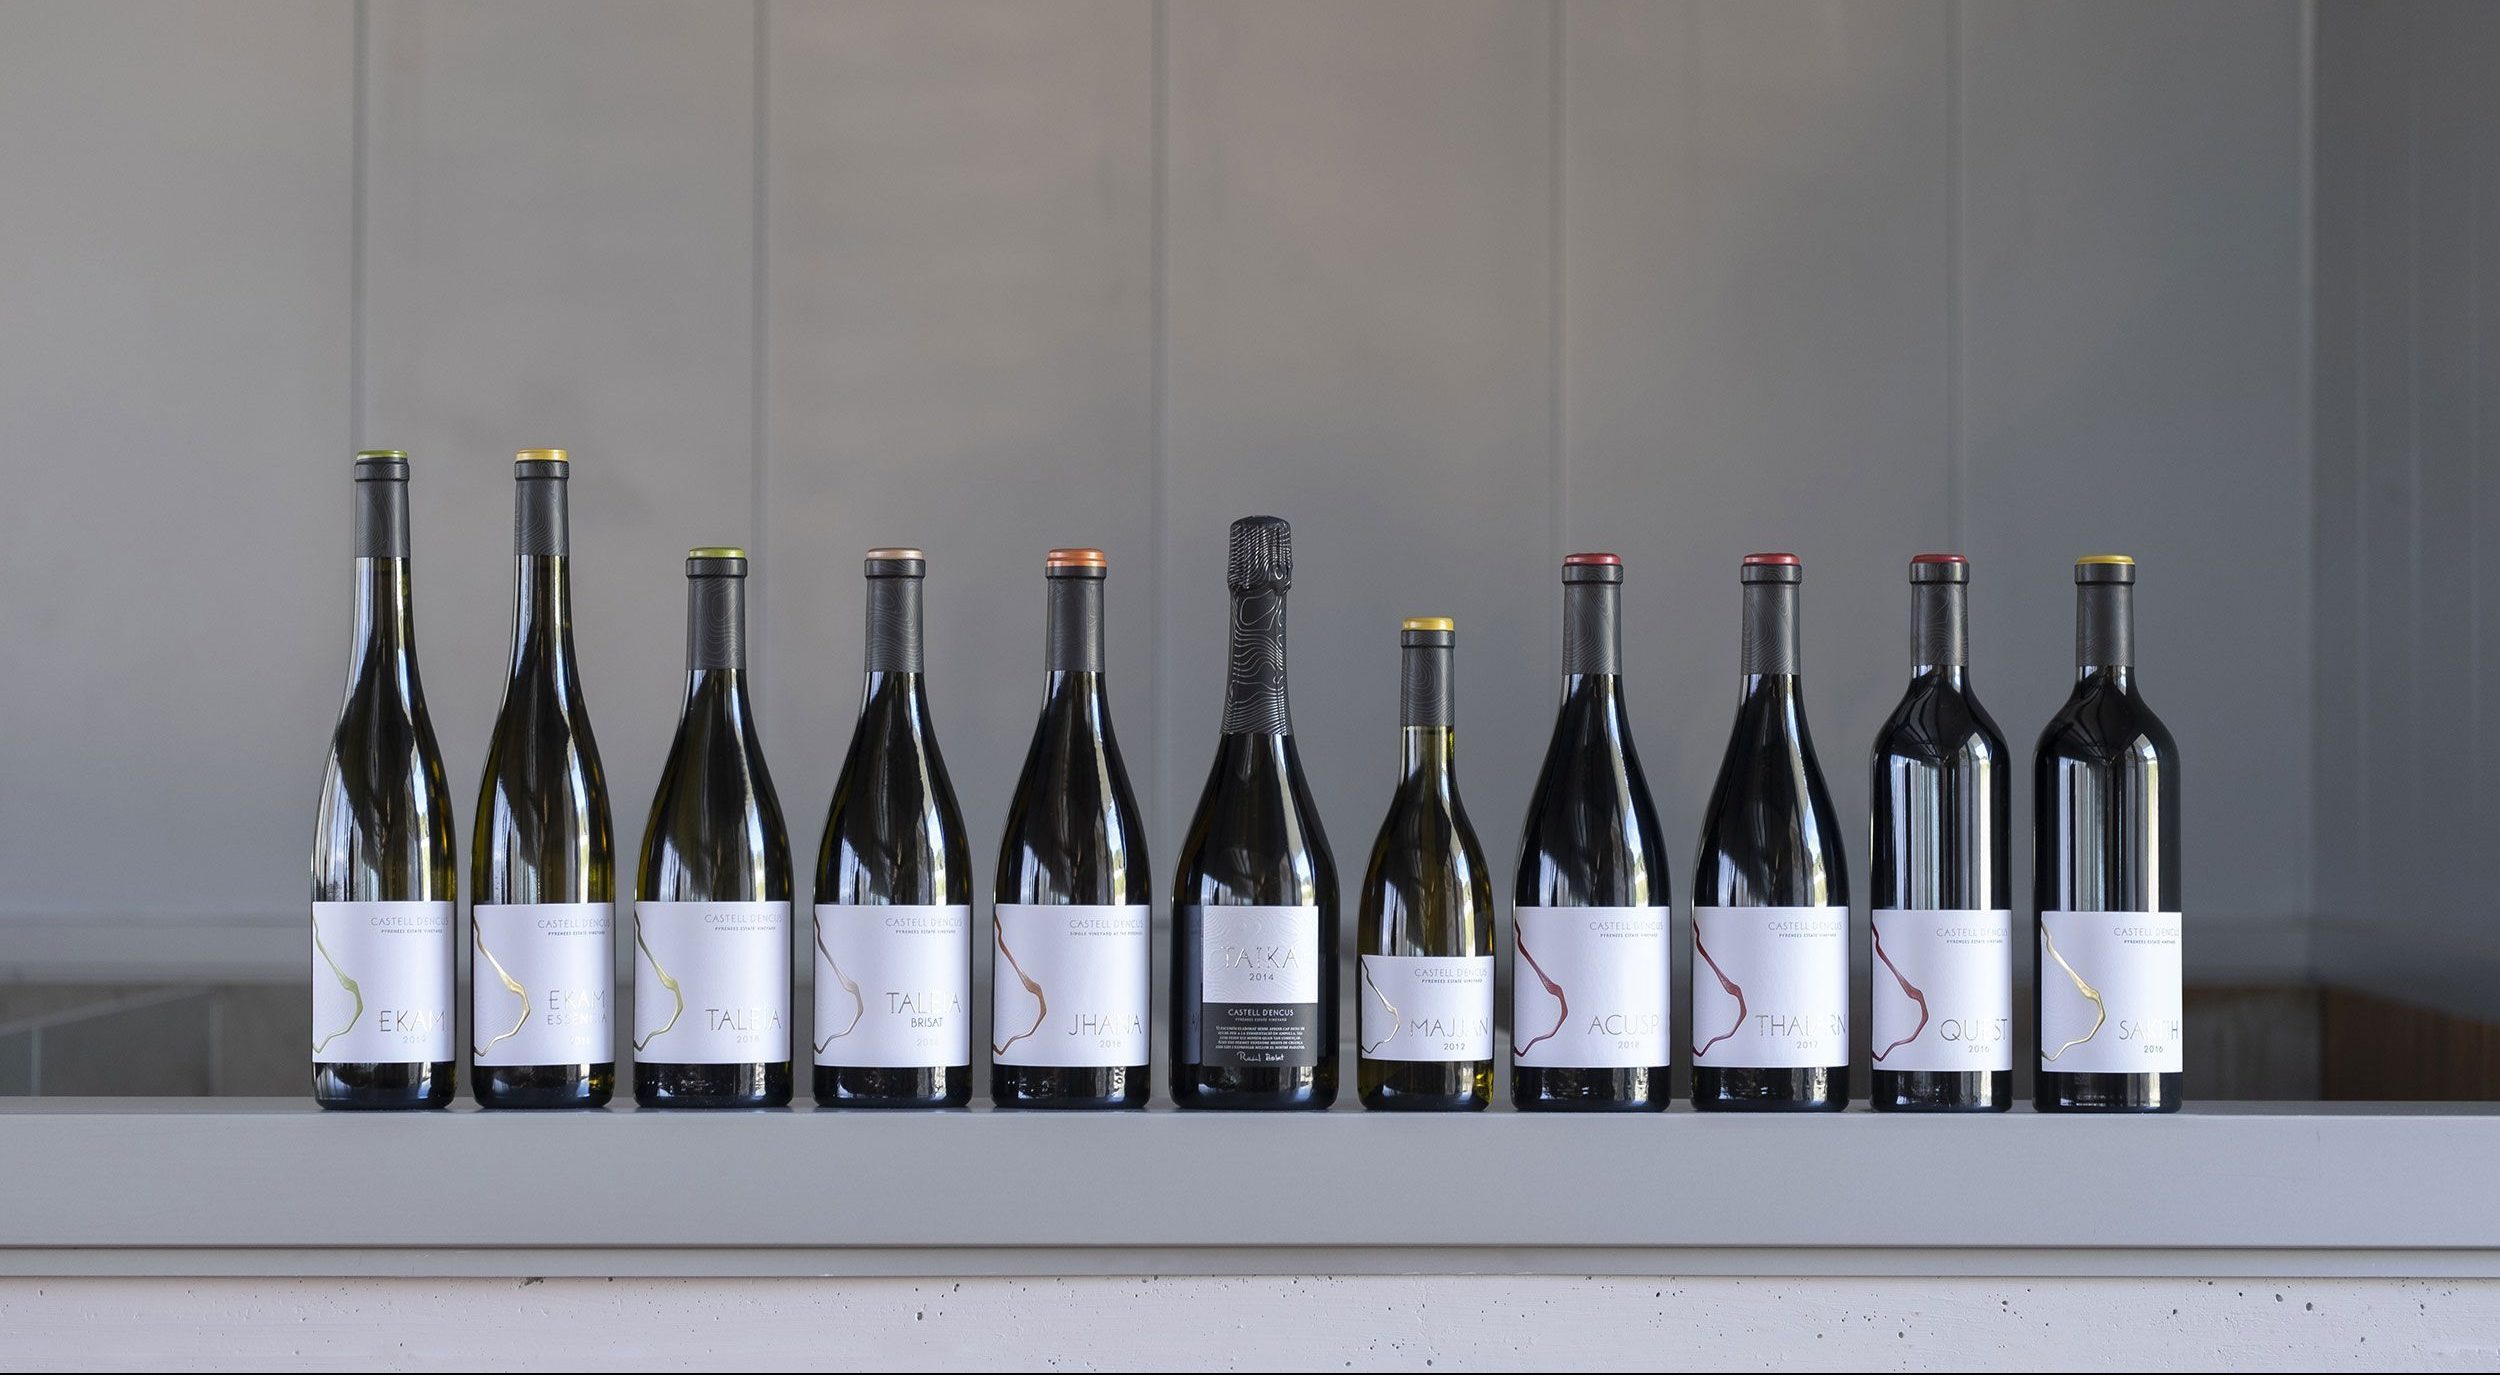 Ampolles de tots els vins de Castell d'Encus: Ekam, Ekam Essència, Taleia, Taleia Brisat, Jhana, Taika, Majjan, Acusp,Thalarn, Quest, Saktih